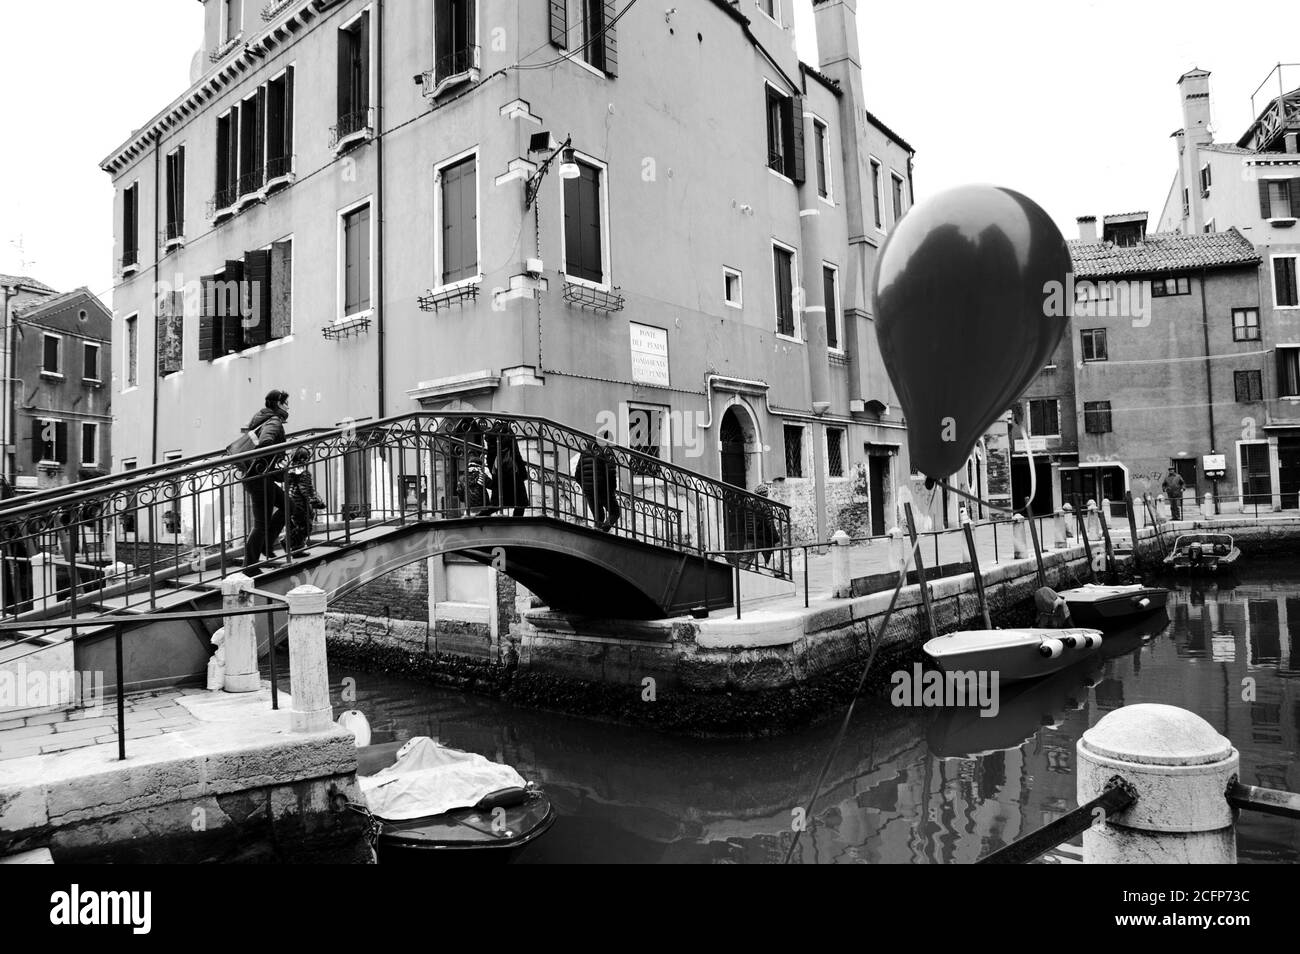 VENISE, ITALIE - 14 FÉVRIER 2015 : ballon perdu à la fête du Carnaval attachée à la balustrade du canal. Le Carnaval de Venise est un événement annuel. Banque D'Images